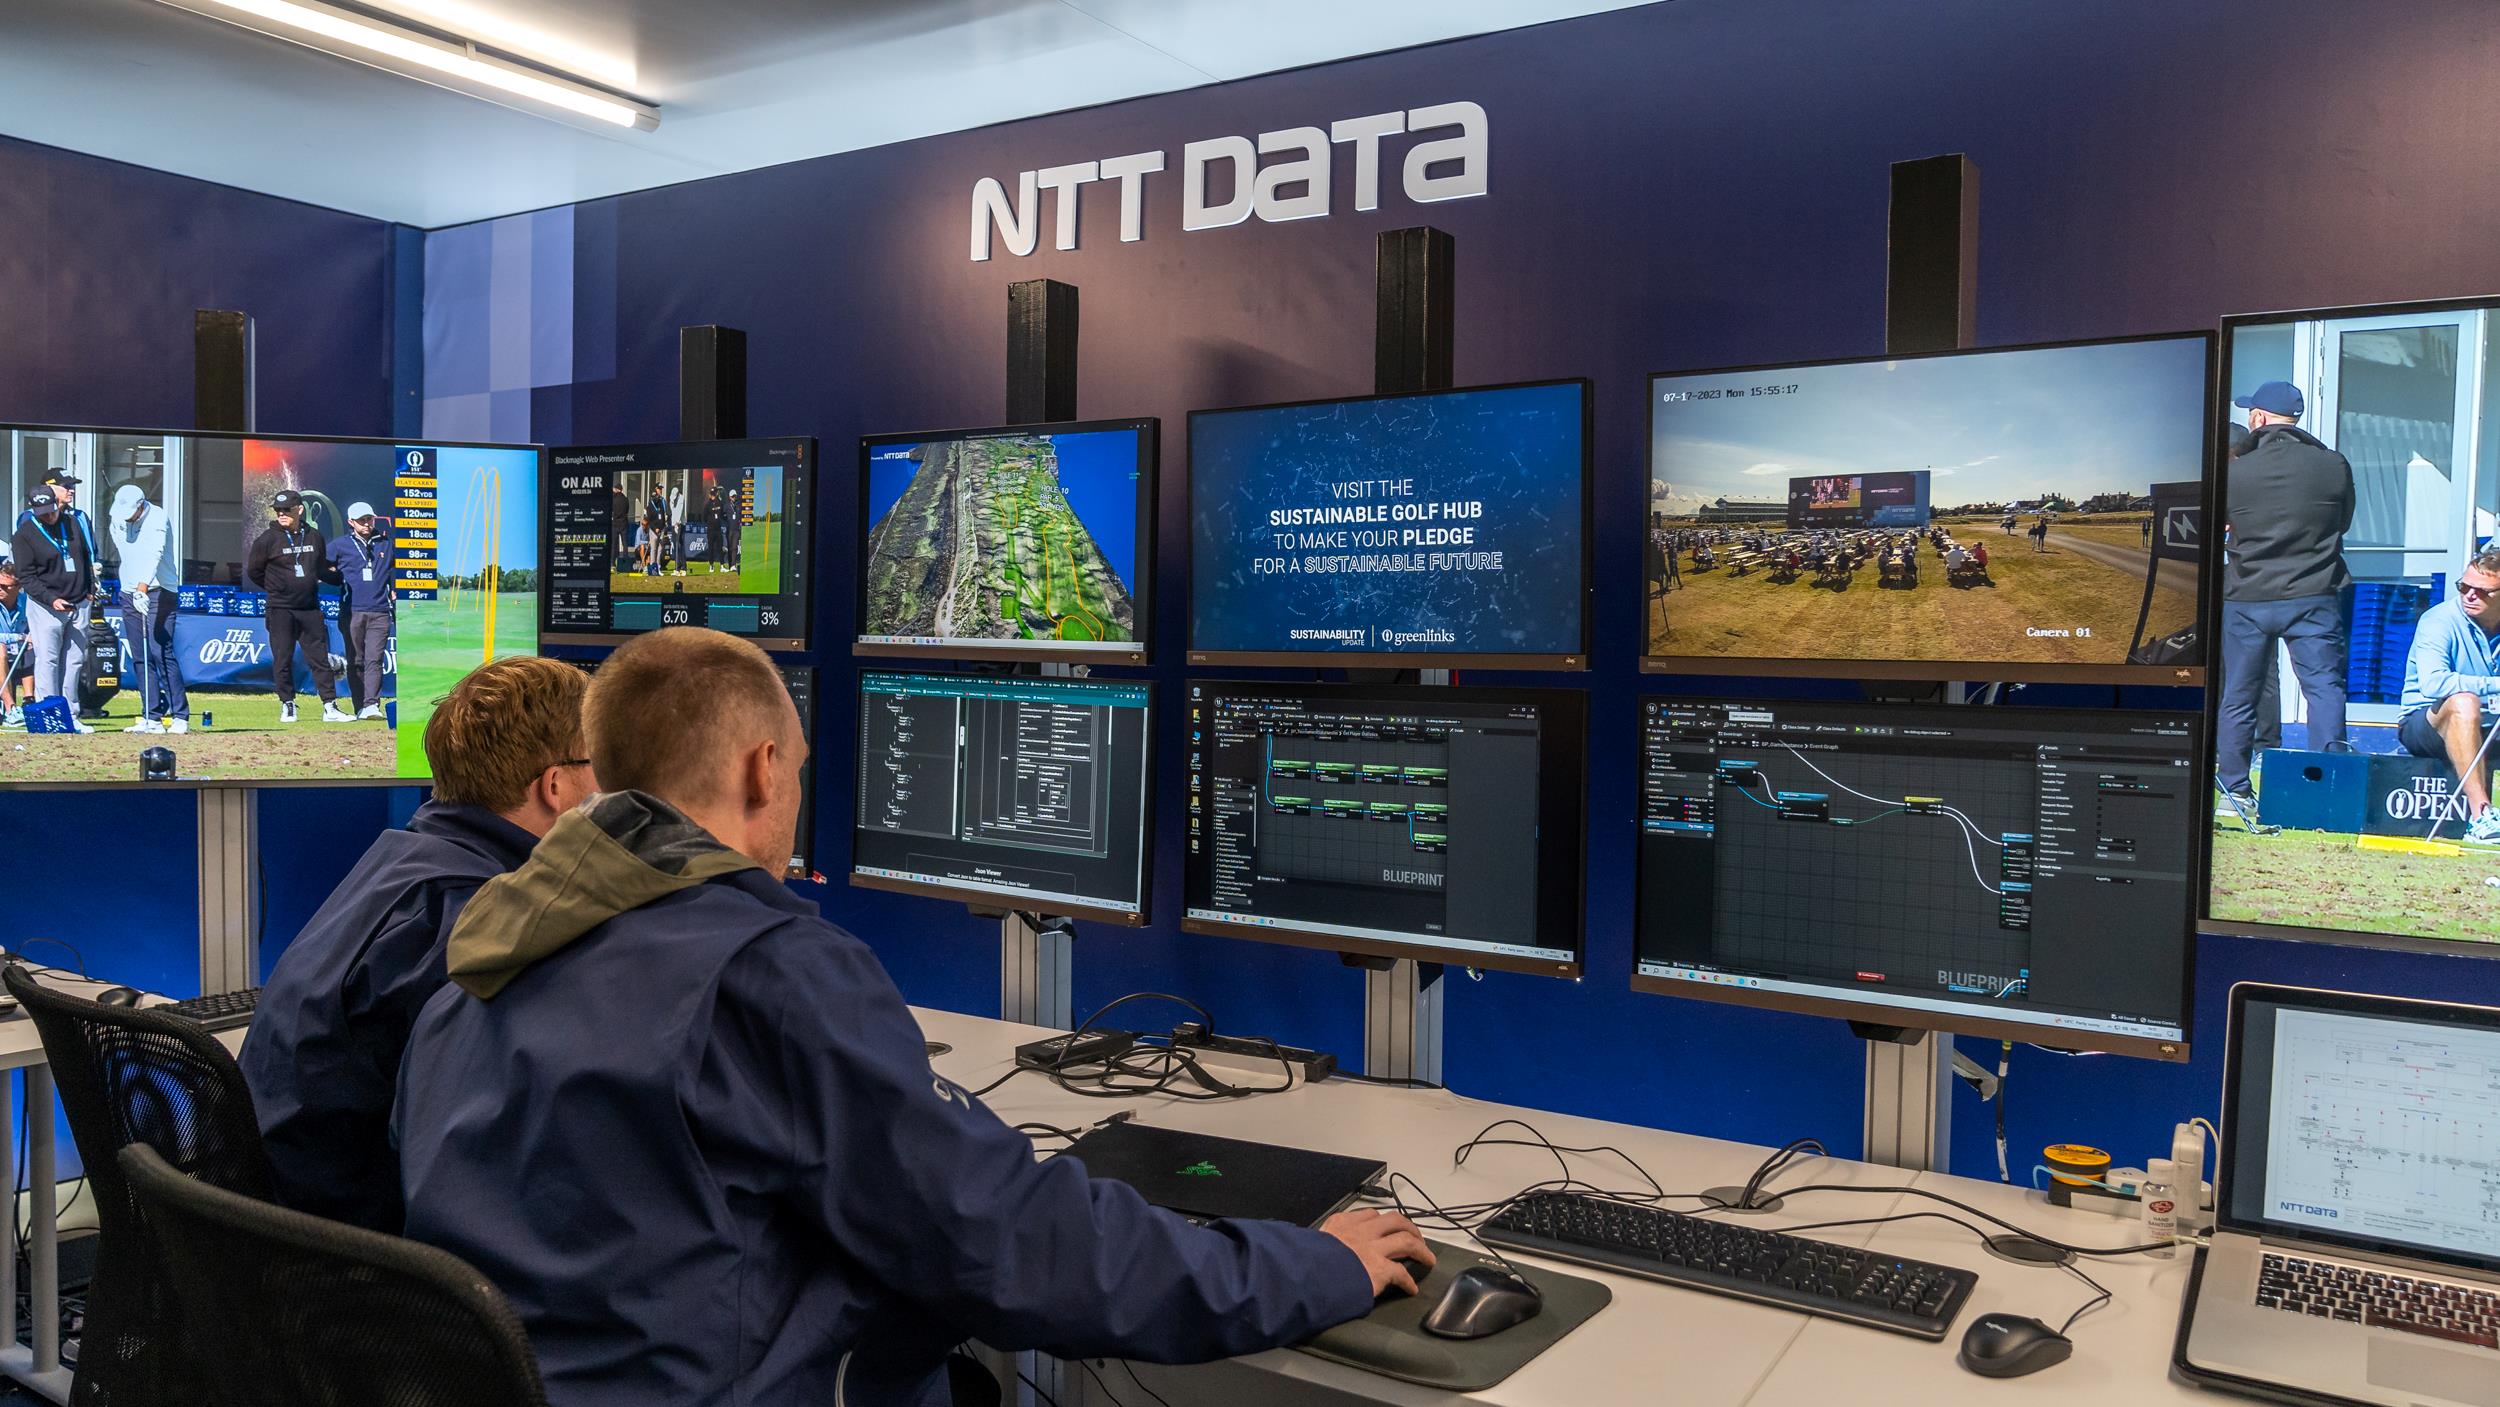 Kerja Sama dengan The R&A, NTT DATA Suguhkan Pengalaman Golf Futuristik lewat Teknologi Terbaru The Open